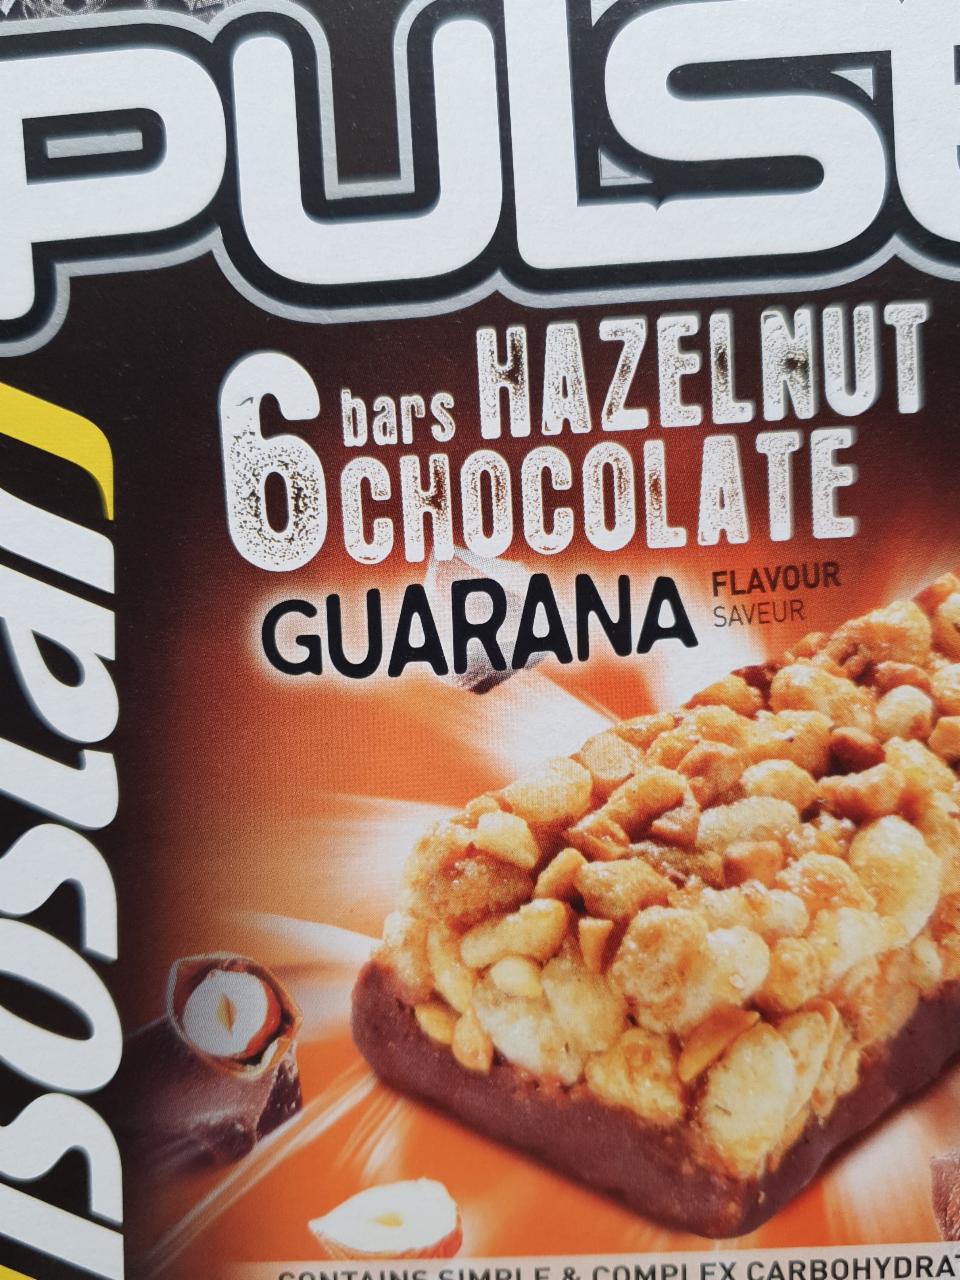 Zdjęcia - Pulse 6 Bars Hazelnut Chocolate Guarana Isostar